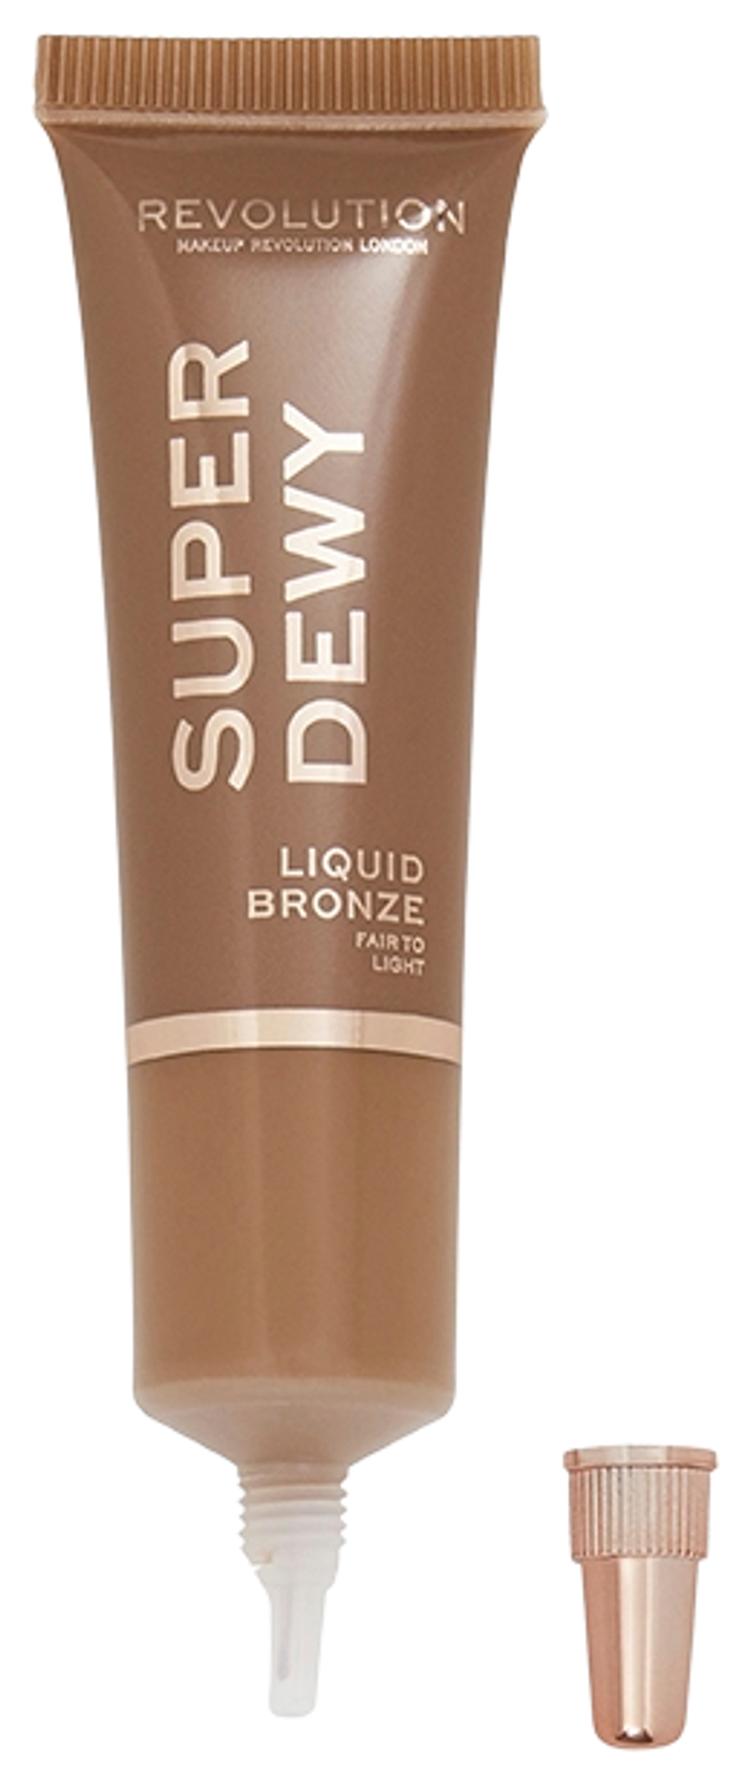 Makeup Revolution Superdewy Liquid Bronzer Fair to Light nestemäinen poskipuna 15ml